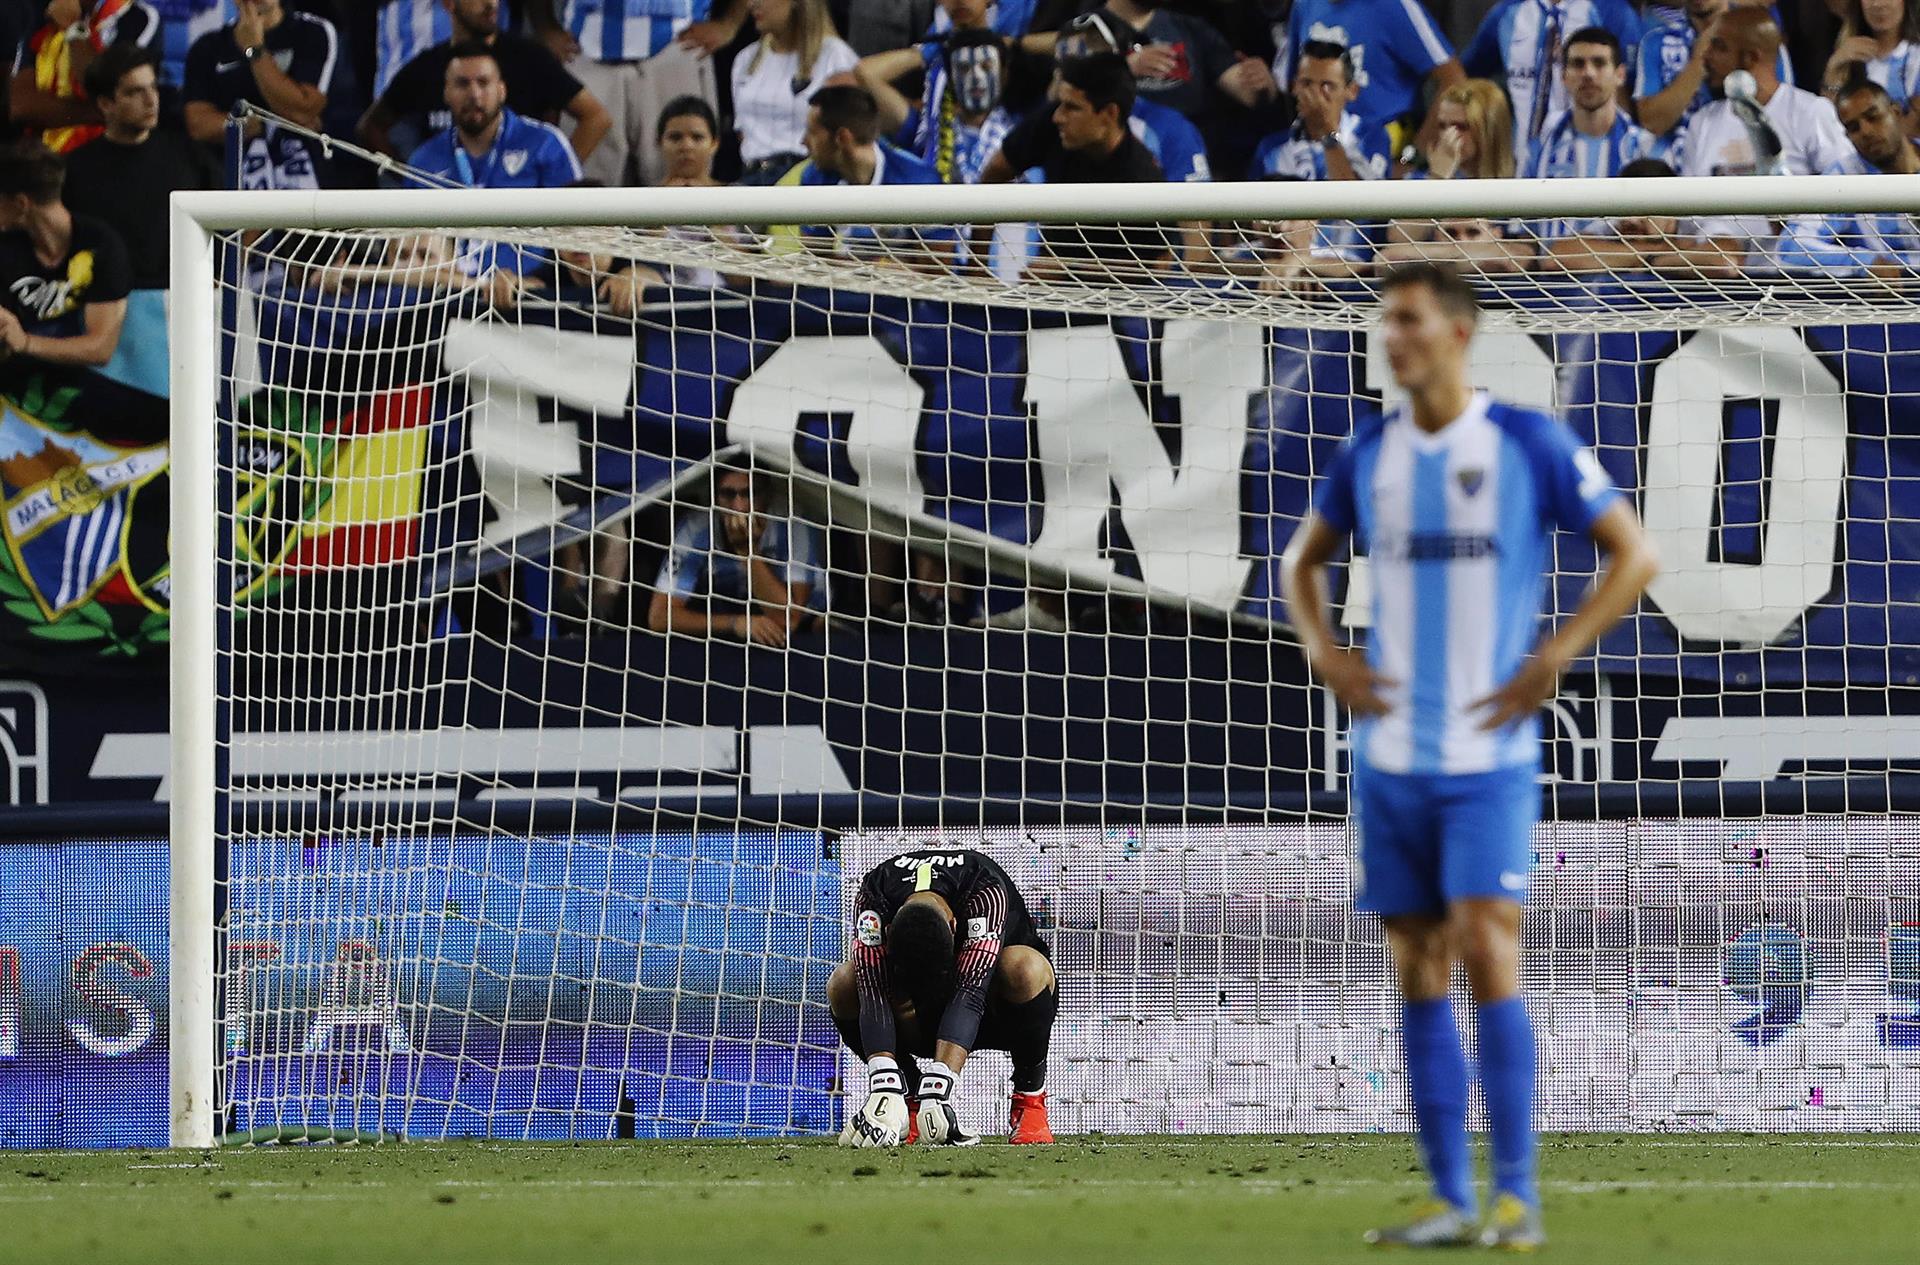 Jugadores del Málaga tras encajar un gol en La Rosaleda, en un partido de hace varias campañas. EFE/Jorge Zapata/ARCHIVO